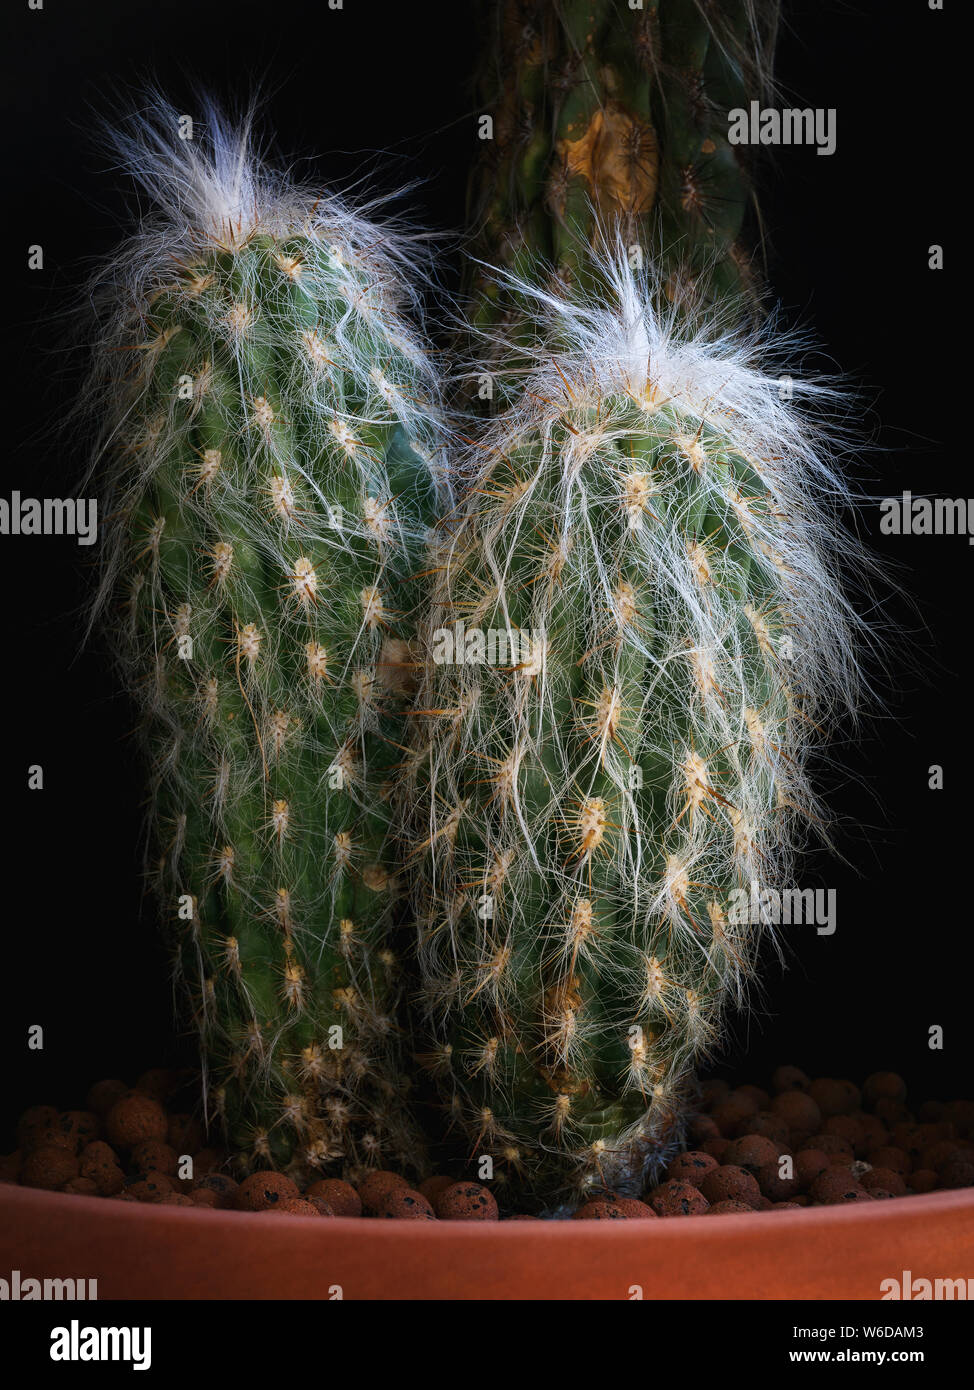 Cactus su sfondo nero. Pianta delle Cactaceae, arborescente, con fusto ramificato coperto da radiali brevi spine giallo marrone con punta. Il succulento Foto Stock